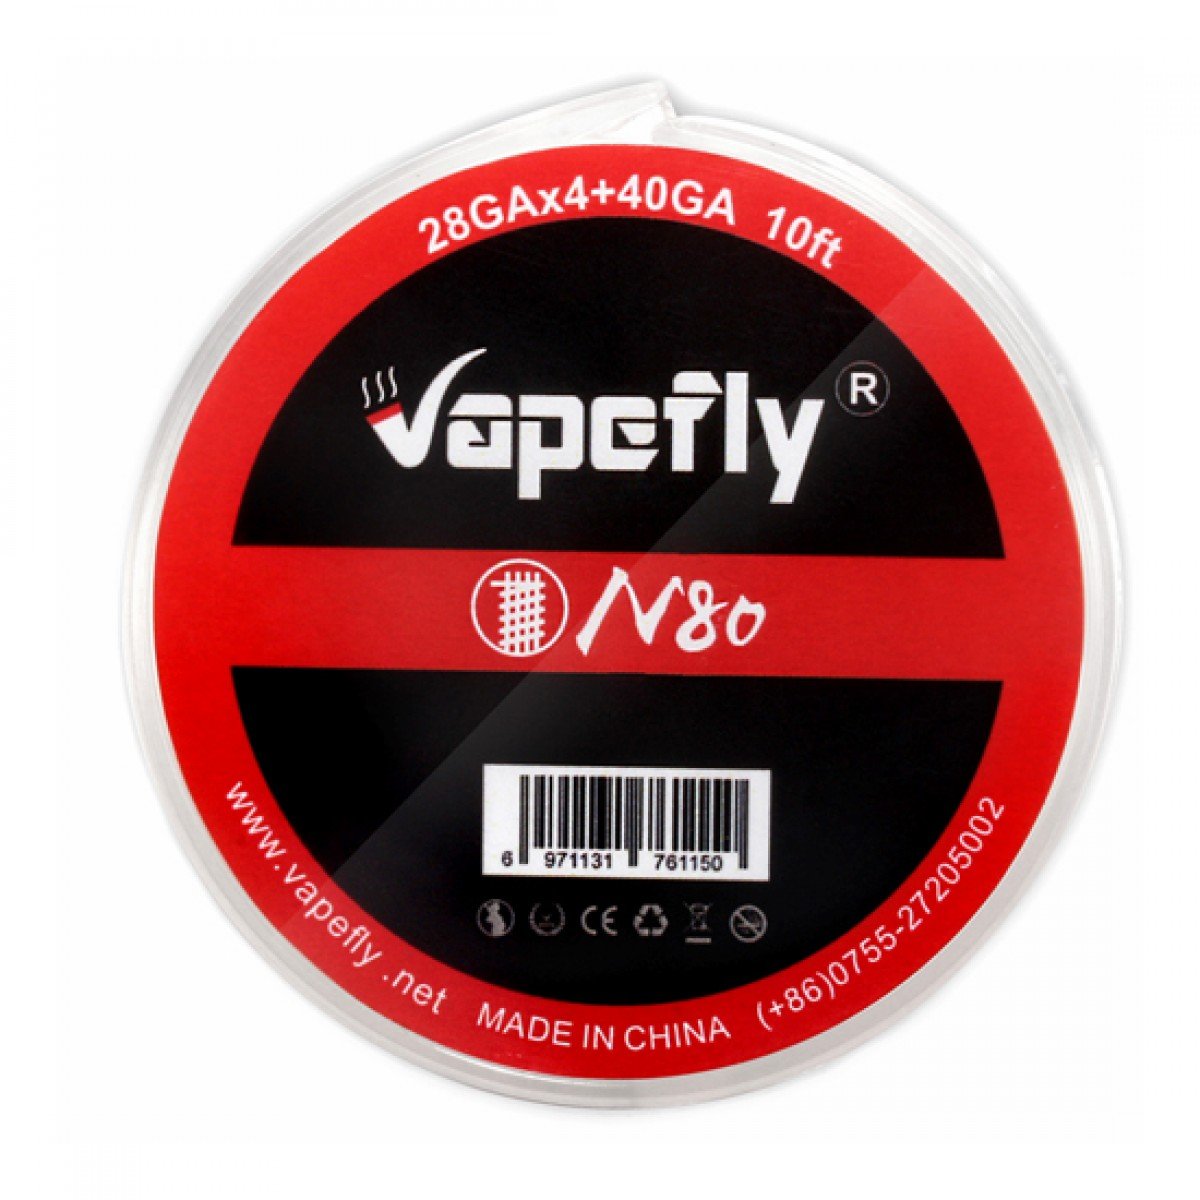 Проволока для намотки Vapefly N80 28GAx4 + 40GA 10FT